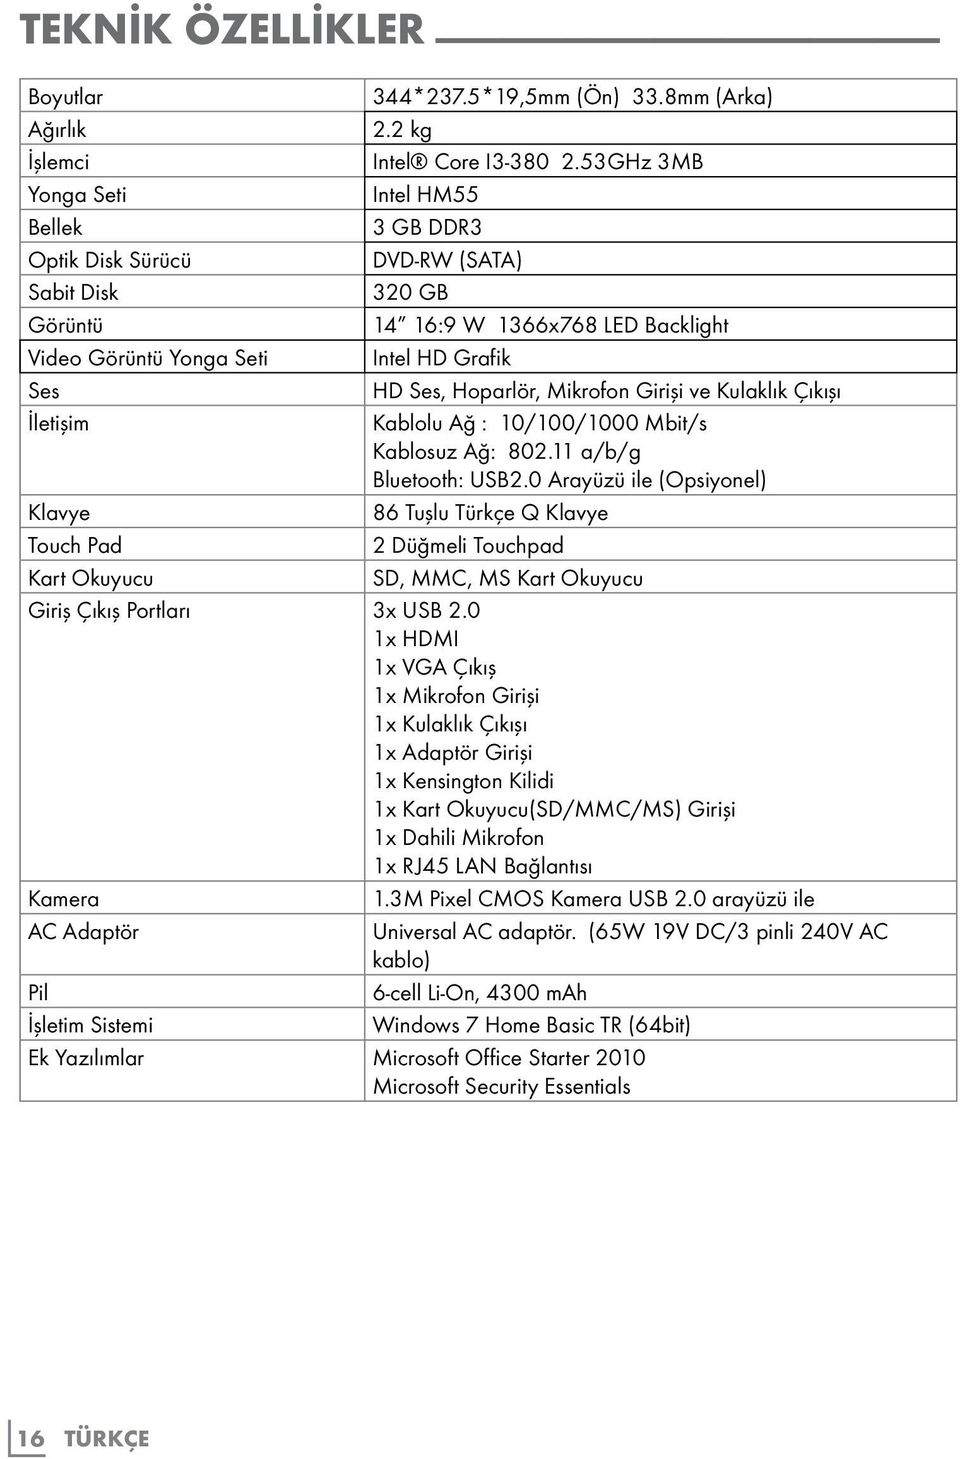 802.11 a/b/g Bluetooth: USB2.0 Arayüzü ile (Opsiyonel) 86 Tuşlu Türkçe Q Klavye 2 Düğmeli Touchpad SD, MMC, MS Kart Okuyucu Klavye Touch Pad Kart Okuyucu Giriş Çıkış Portları 3x USB 2.